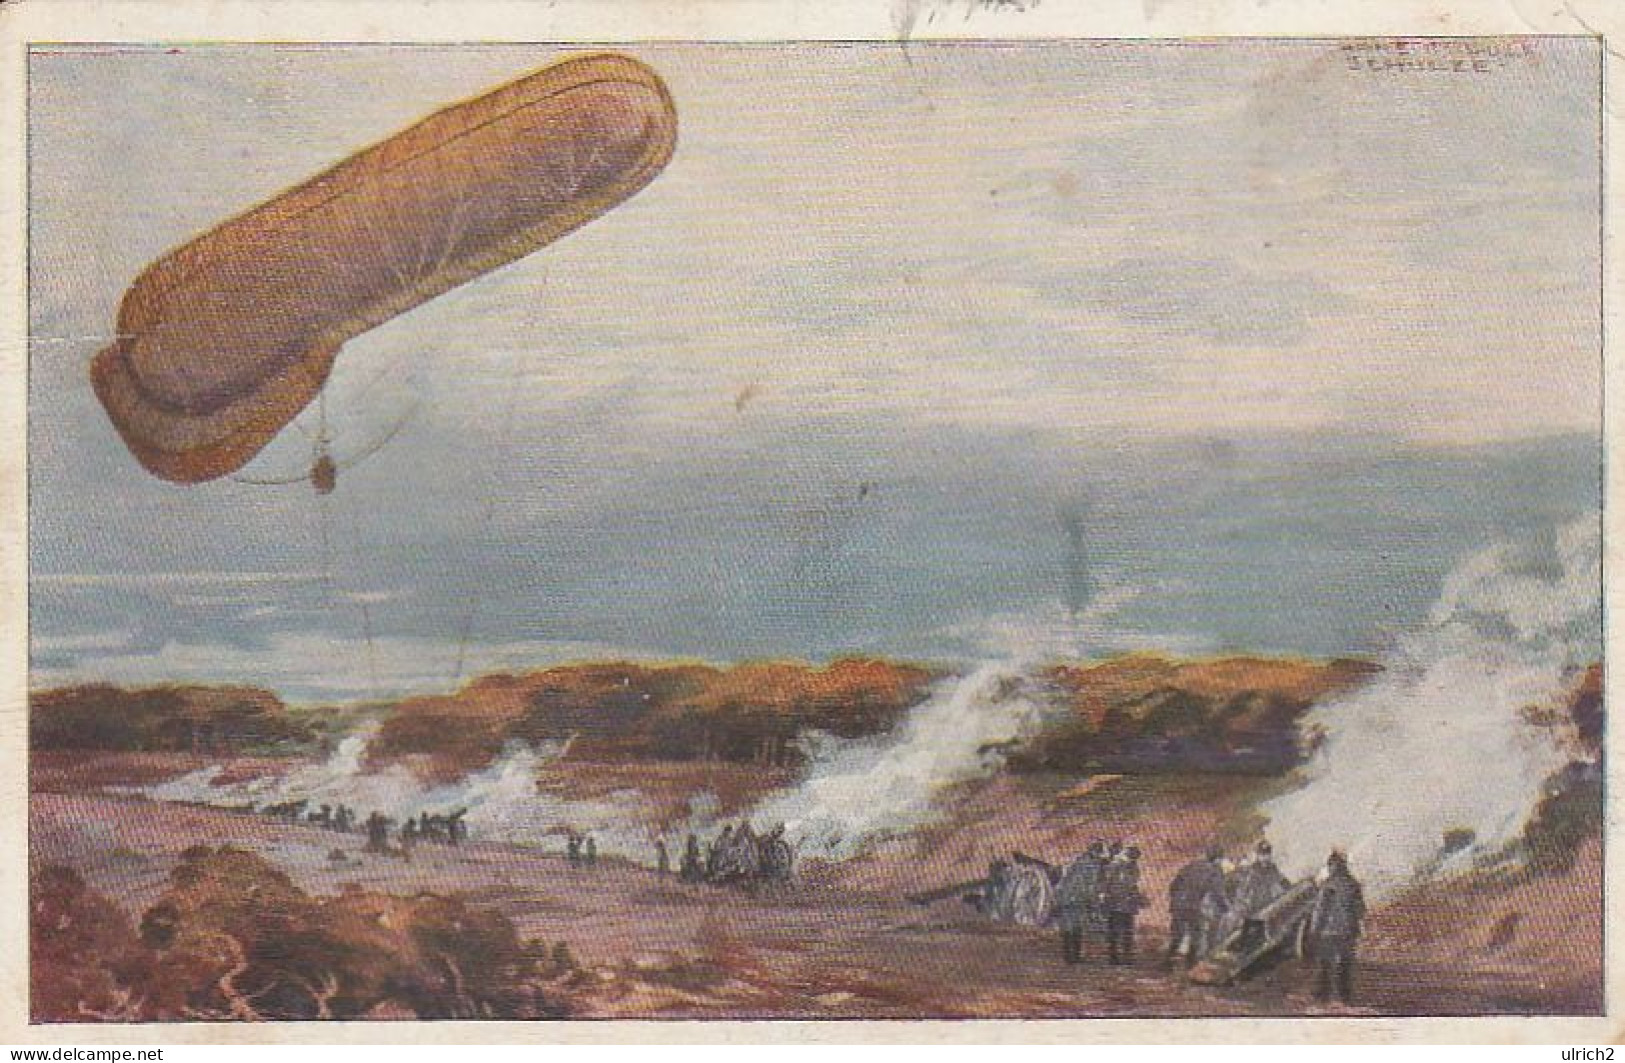 AK Fesselballon Unsere Artilleriewirkung Beobachtend - Prof. Schulze - Patriotika - 1915  (68650) - Mongolfiere